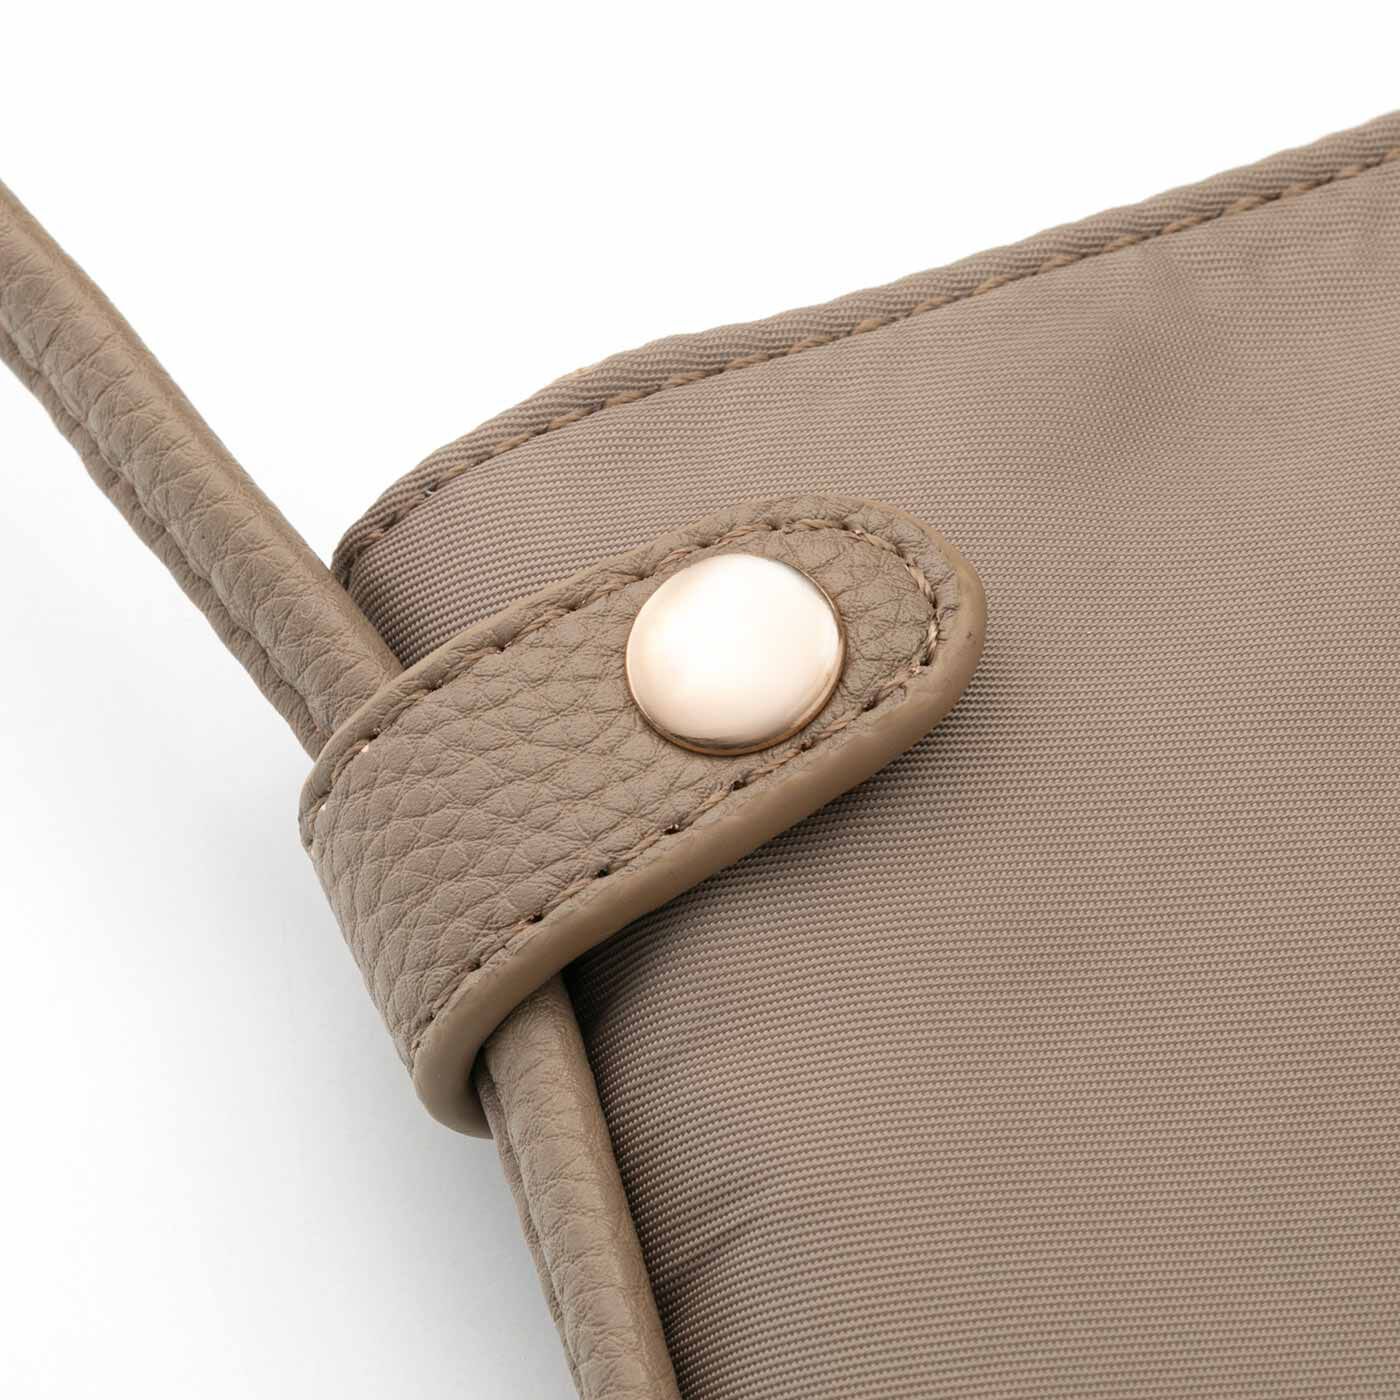 Real Stock|ラミプリュス　A4サイズが入るバッグに変身 パタパタ折り返しポケットが便利なショルダーバッグ|フラップに通して、ボタンで留めるとA4サイズもすっぽり収納。